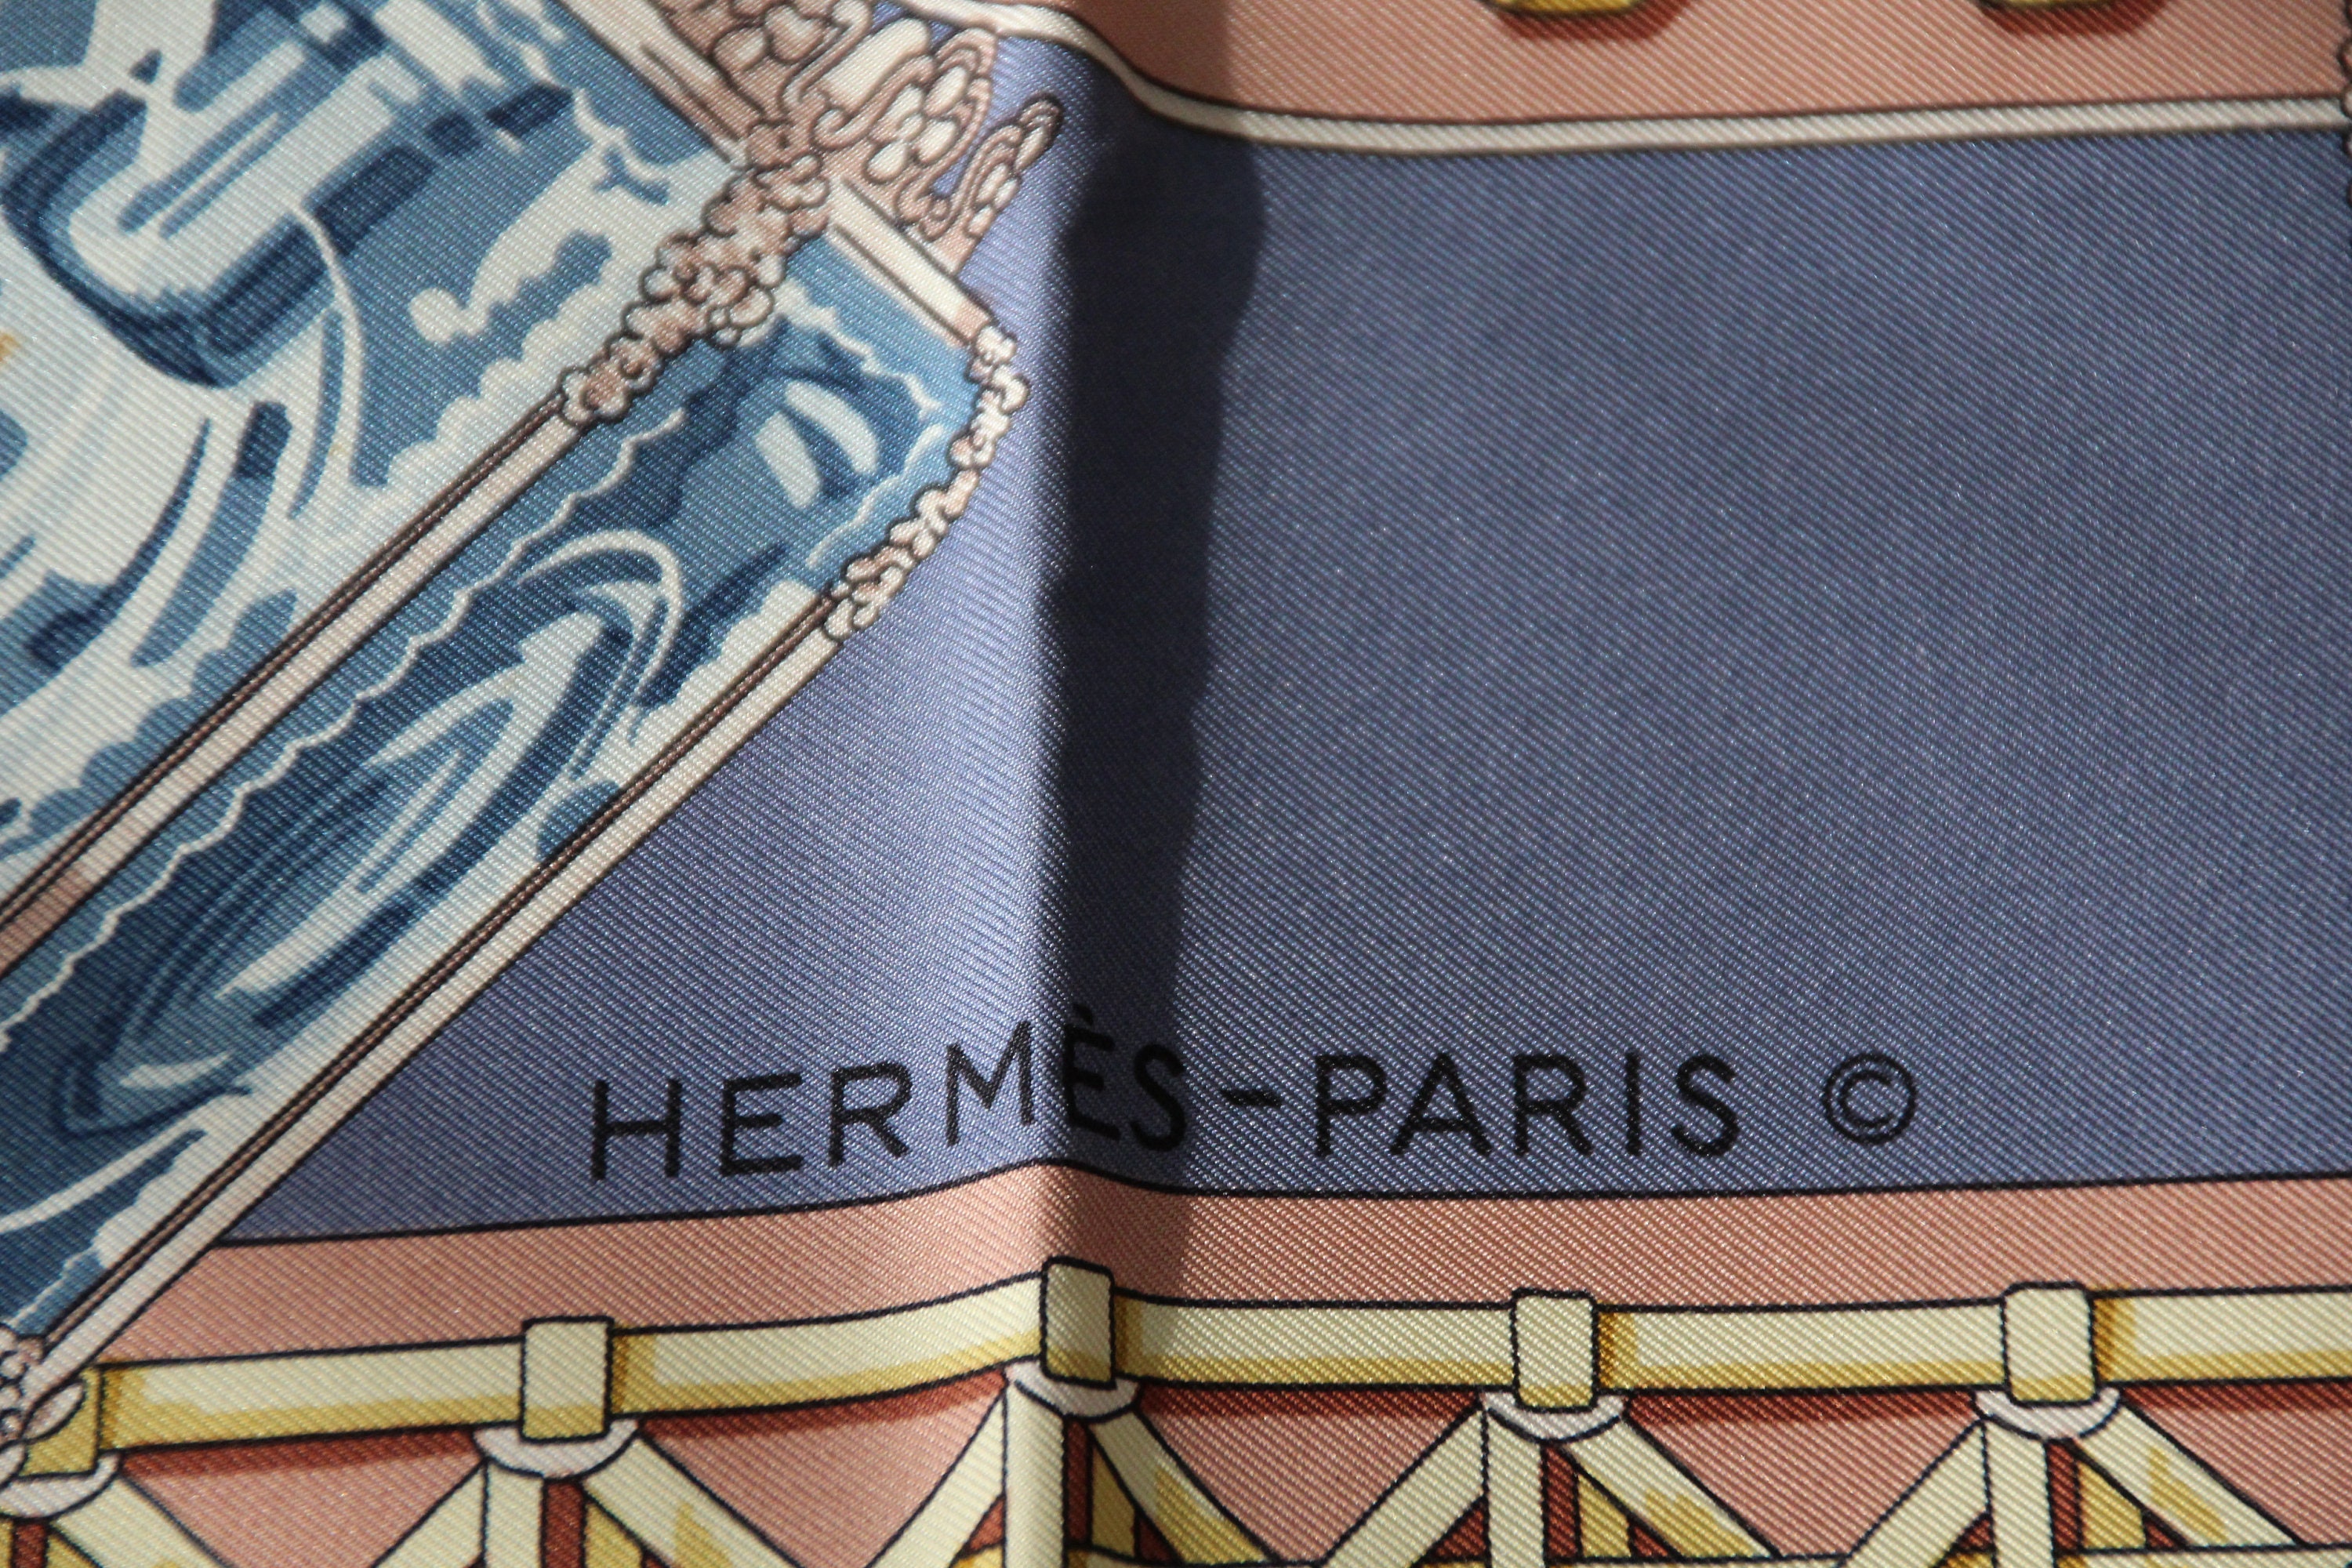 Hermes Silk Scarf Hermes Scarf Authentic Hermes Scarf Purple - Etsy